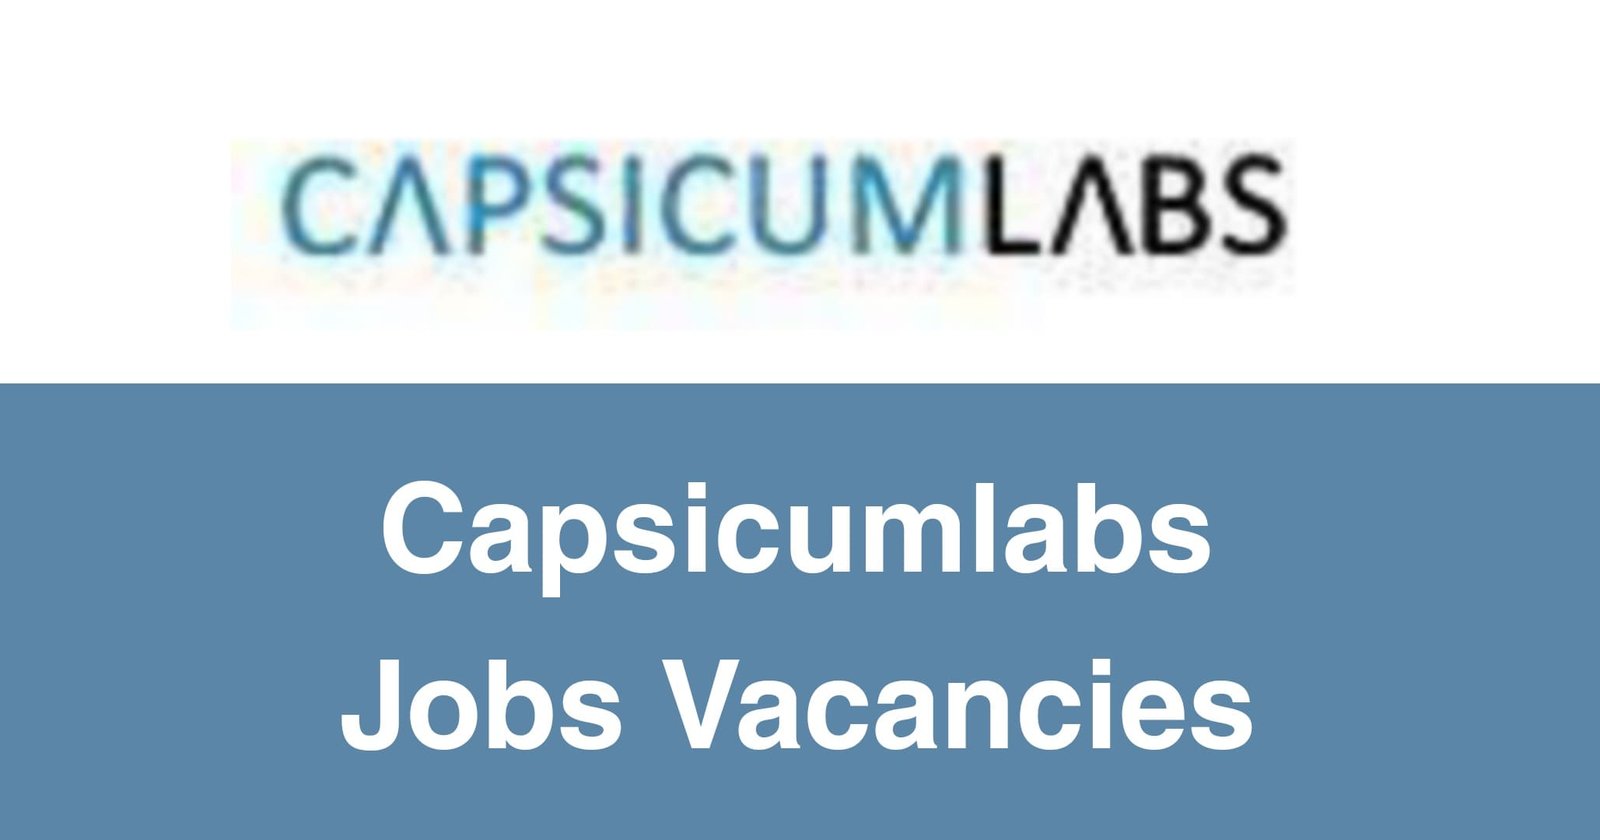 Capsicumlabs Jobs Vacancies